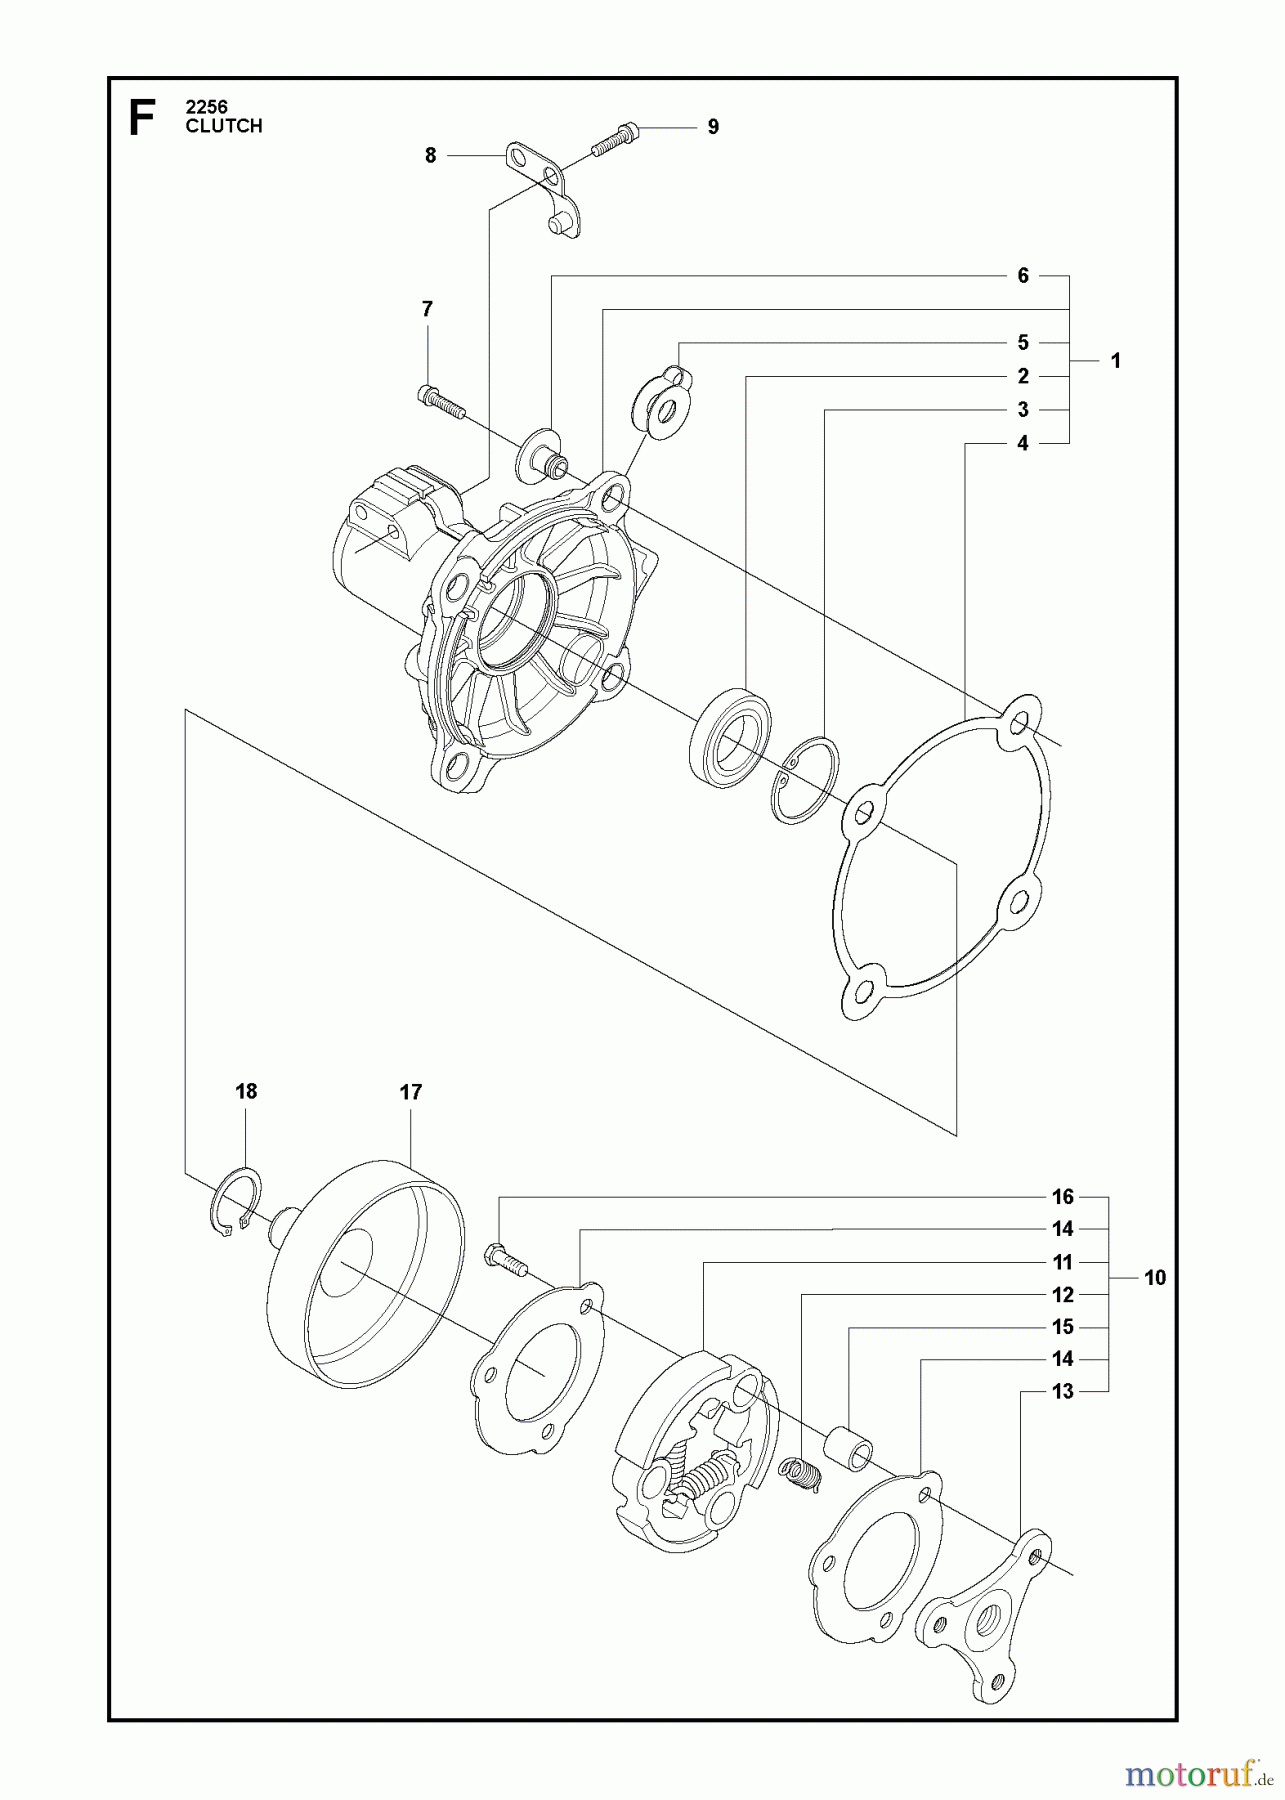  Jonsered Motorsensen, Trimmer FC2256W - Jonsered String/Brush Trimmer (2011-01) CLUTCH